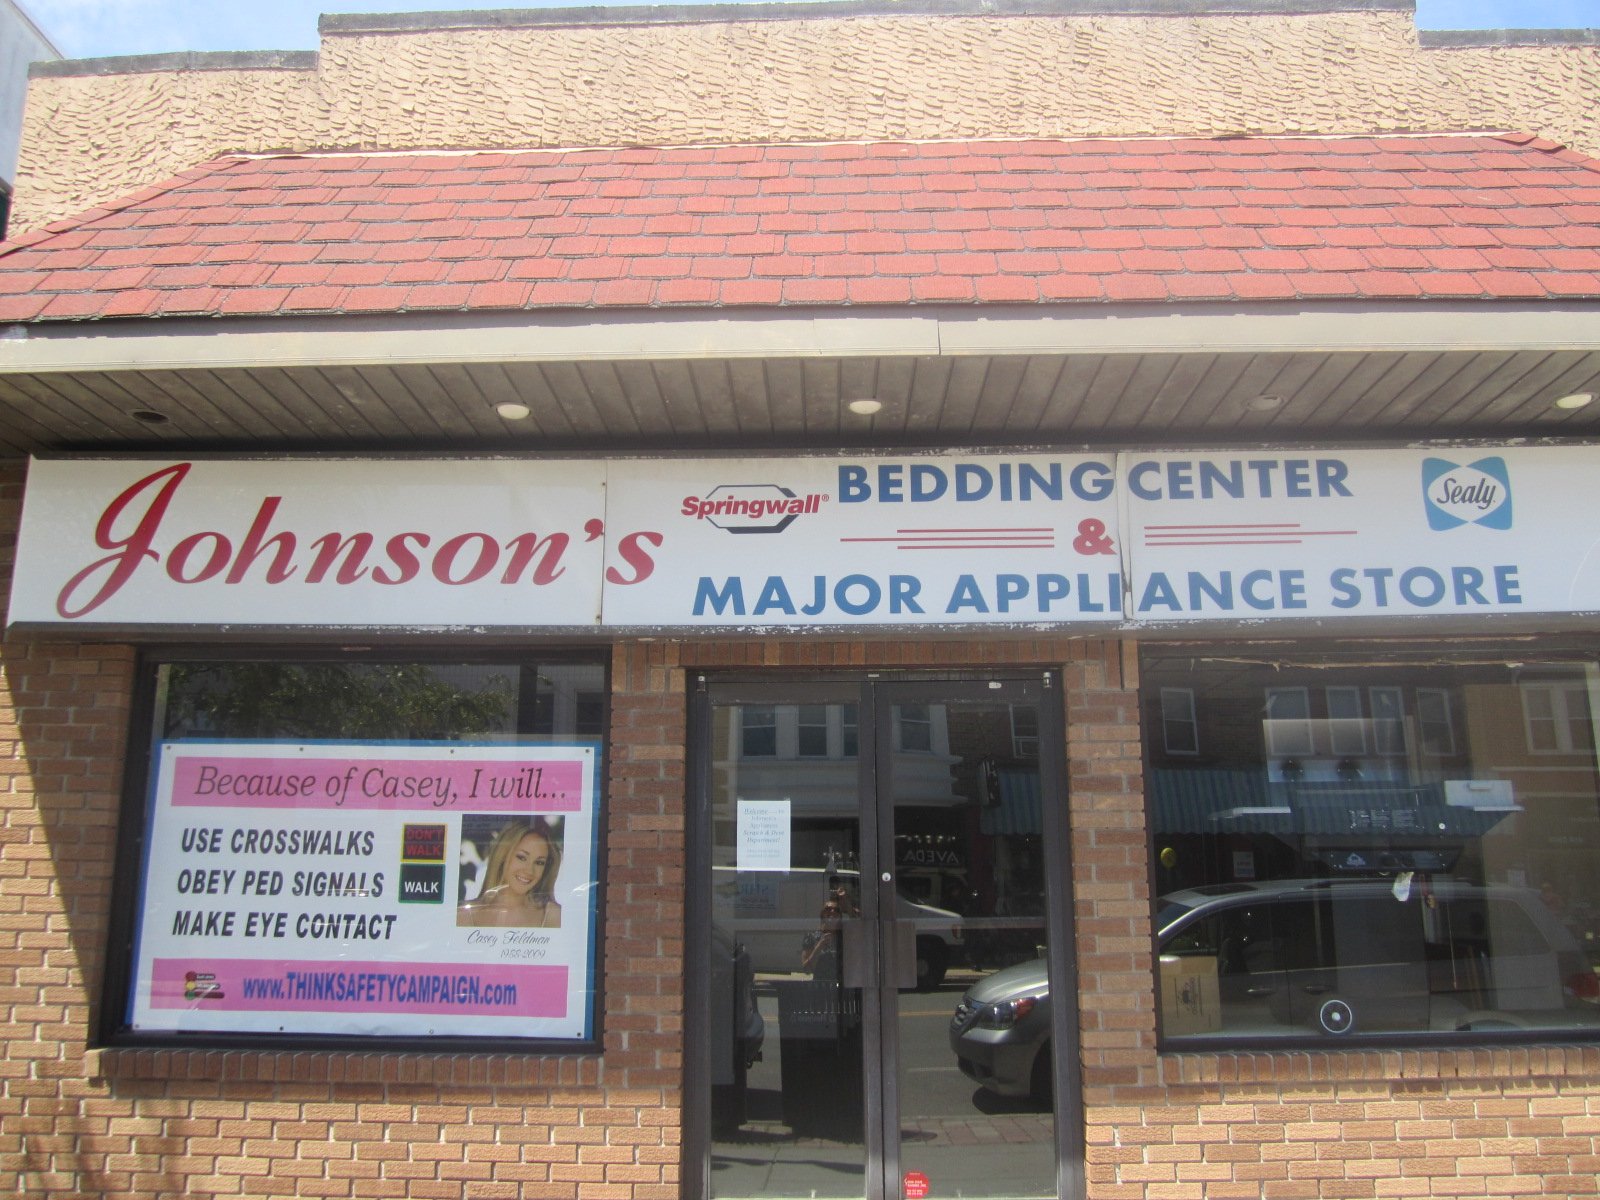 Johnson's bedding center & major appliance store - Ocean City, NJ